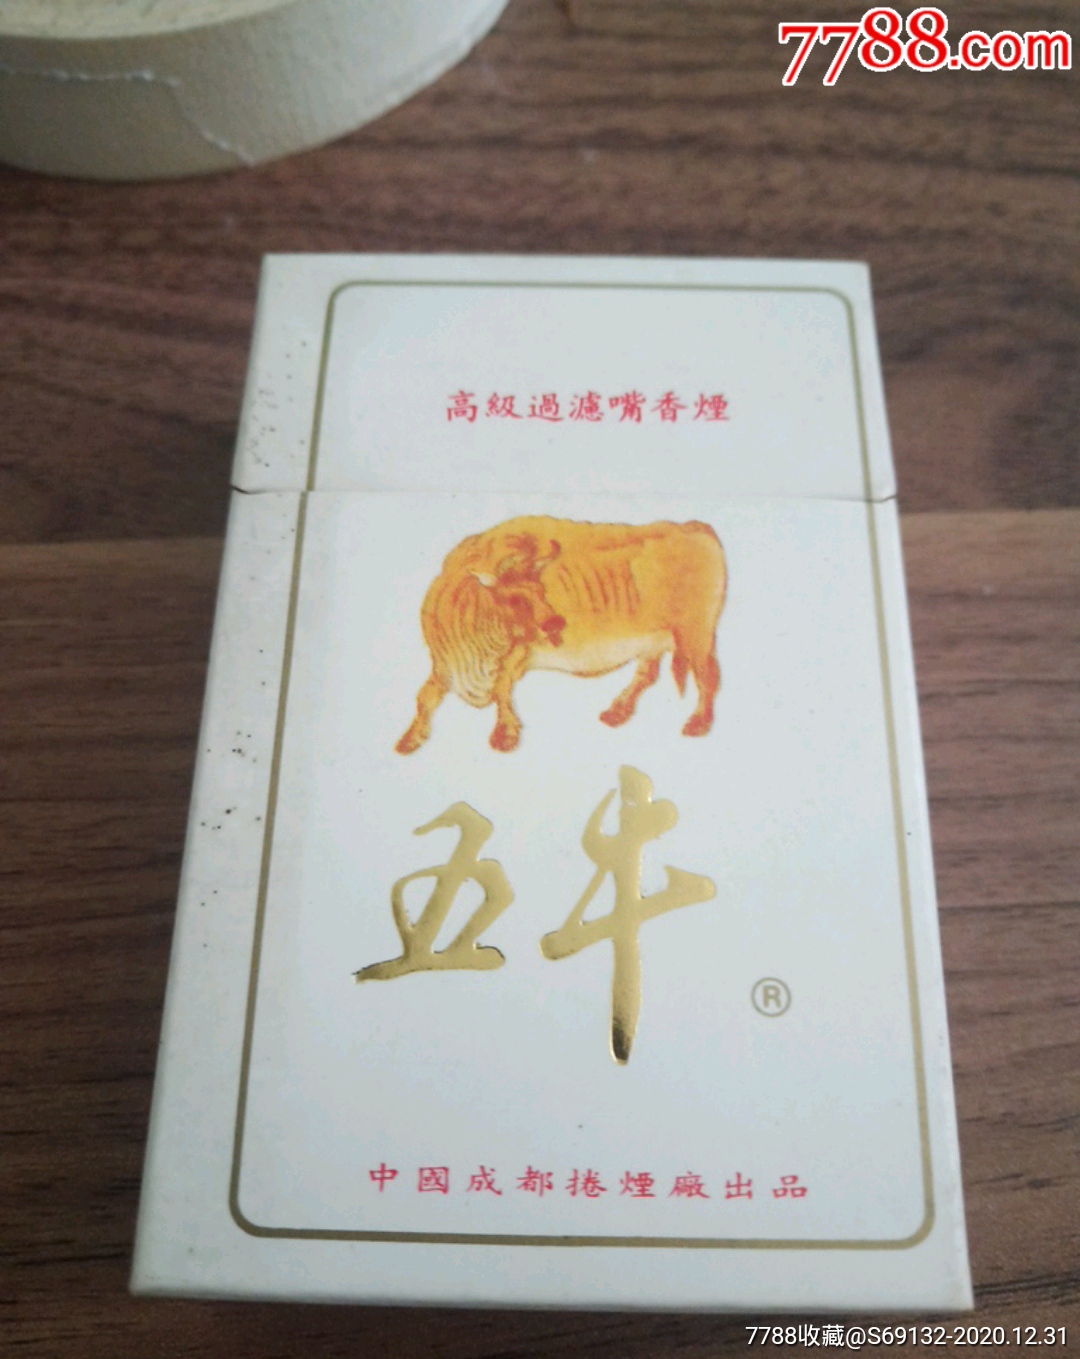 五牛-烟标/烟盒-7788收藏